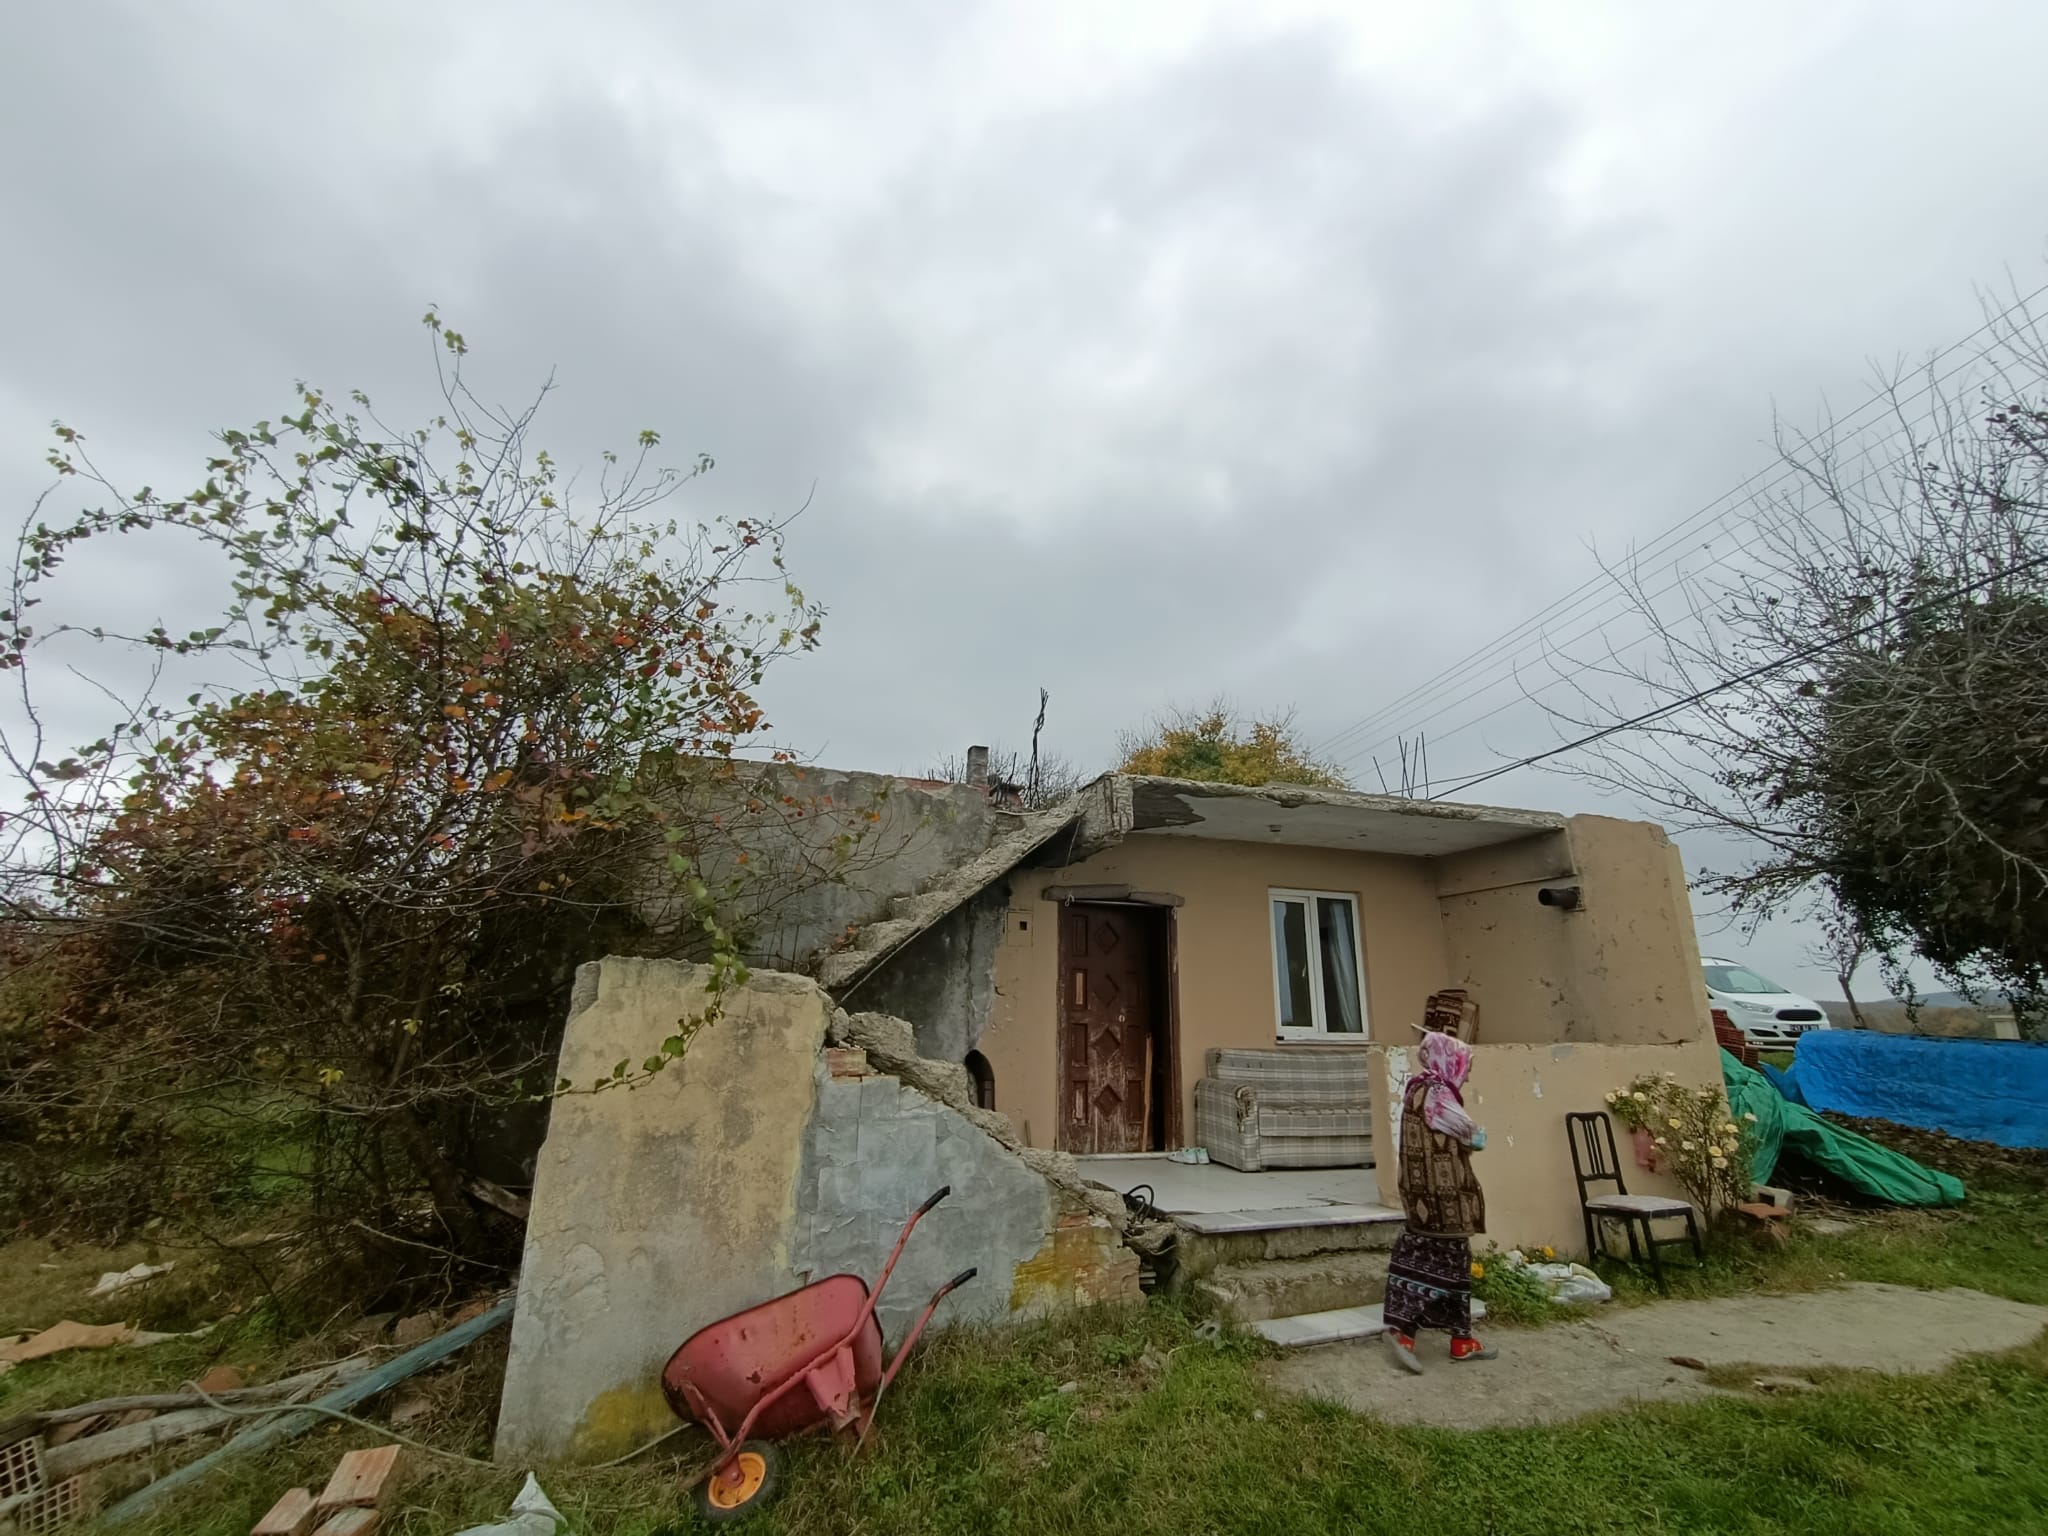 Kocaeli’de yalnız yaşayan kadının evi belediye ve hayırseverlerin yardımıyla onarıldı